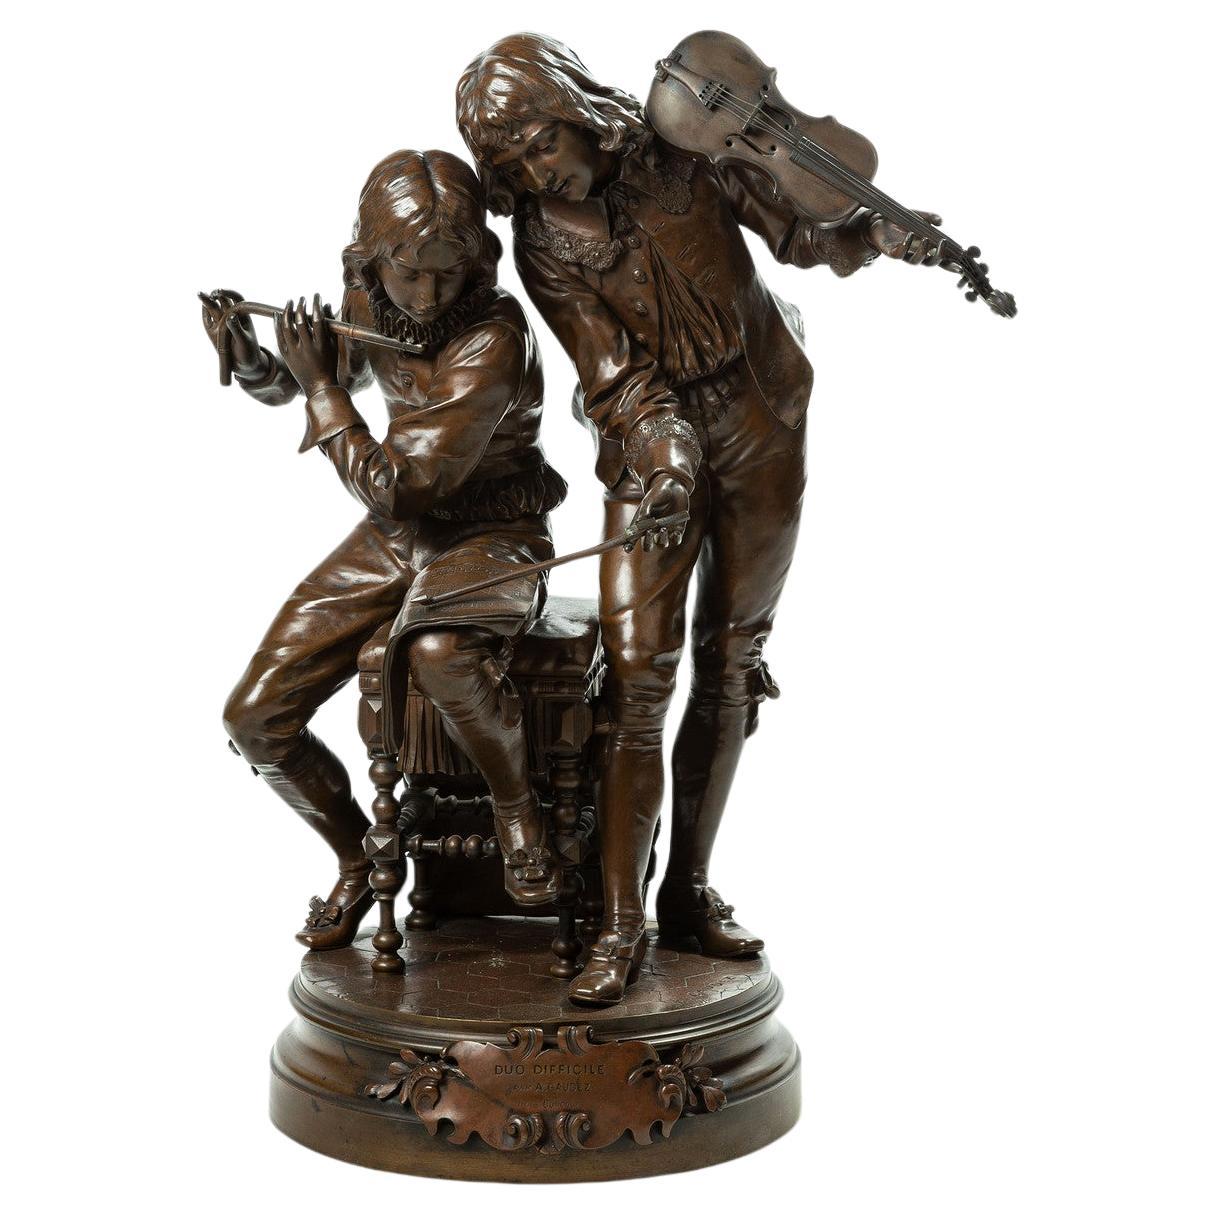 Patinierte Bronzefigurengruppe „Duo Difficile“ von Adrien-Etienne Gaudez  im Angebot